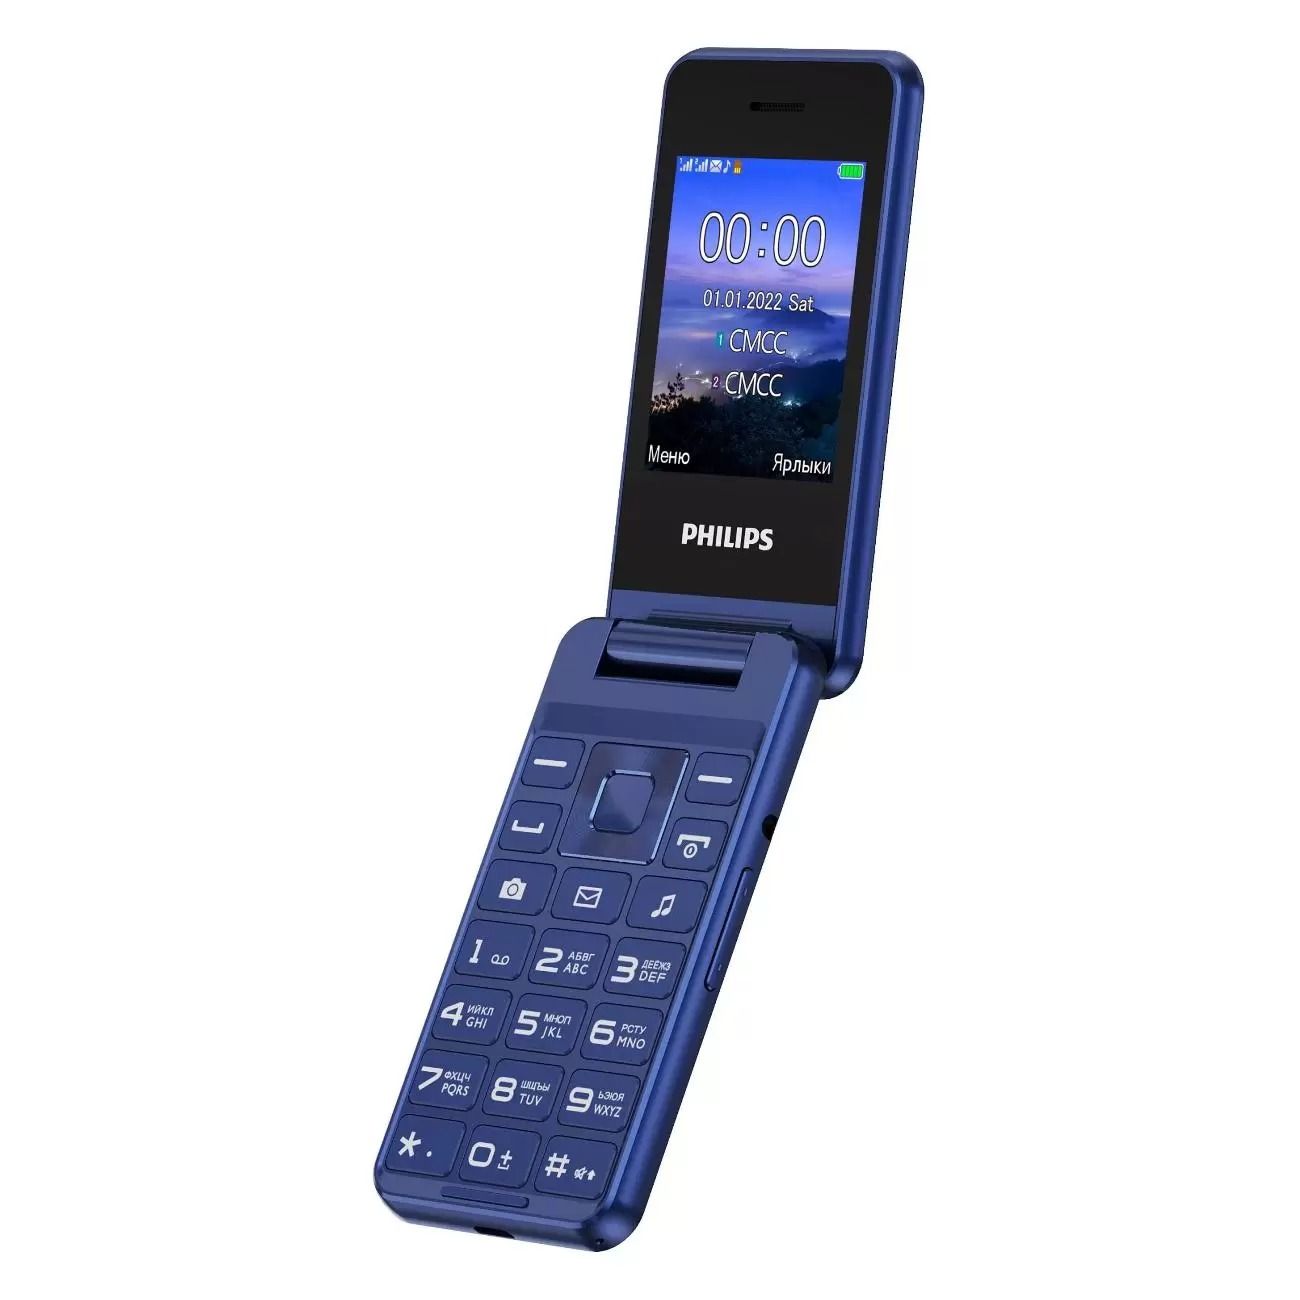 Филипс е2601. Philips Xenium e2601. Мобильный телефон Philips Xenium e2601. Philips Xenium e2601 Red. Мобильный телефон Philips Xenium e2601 Dark Grey.